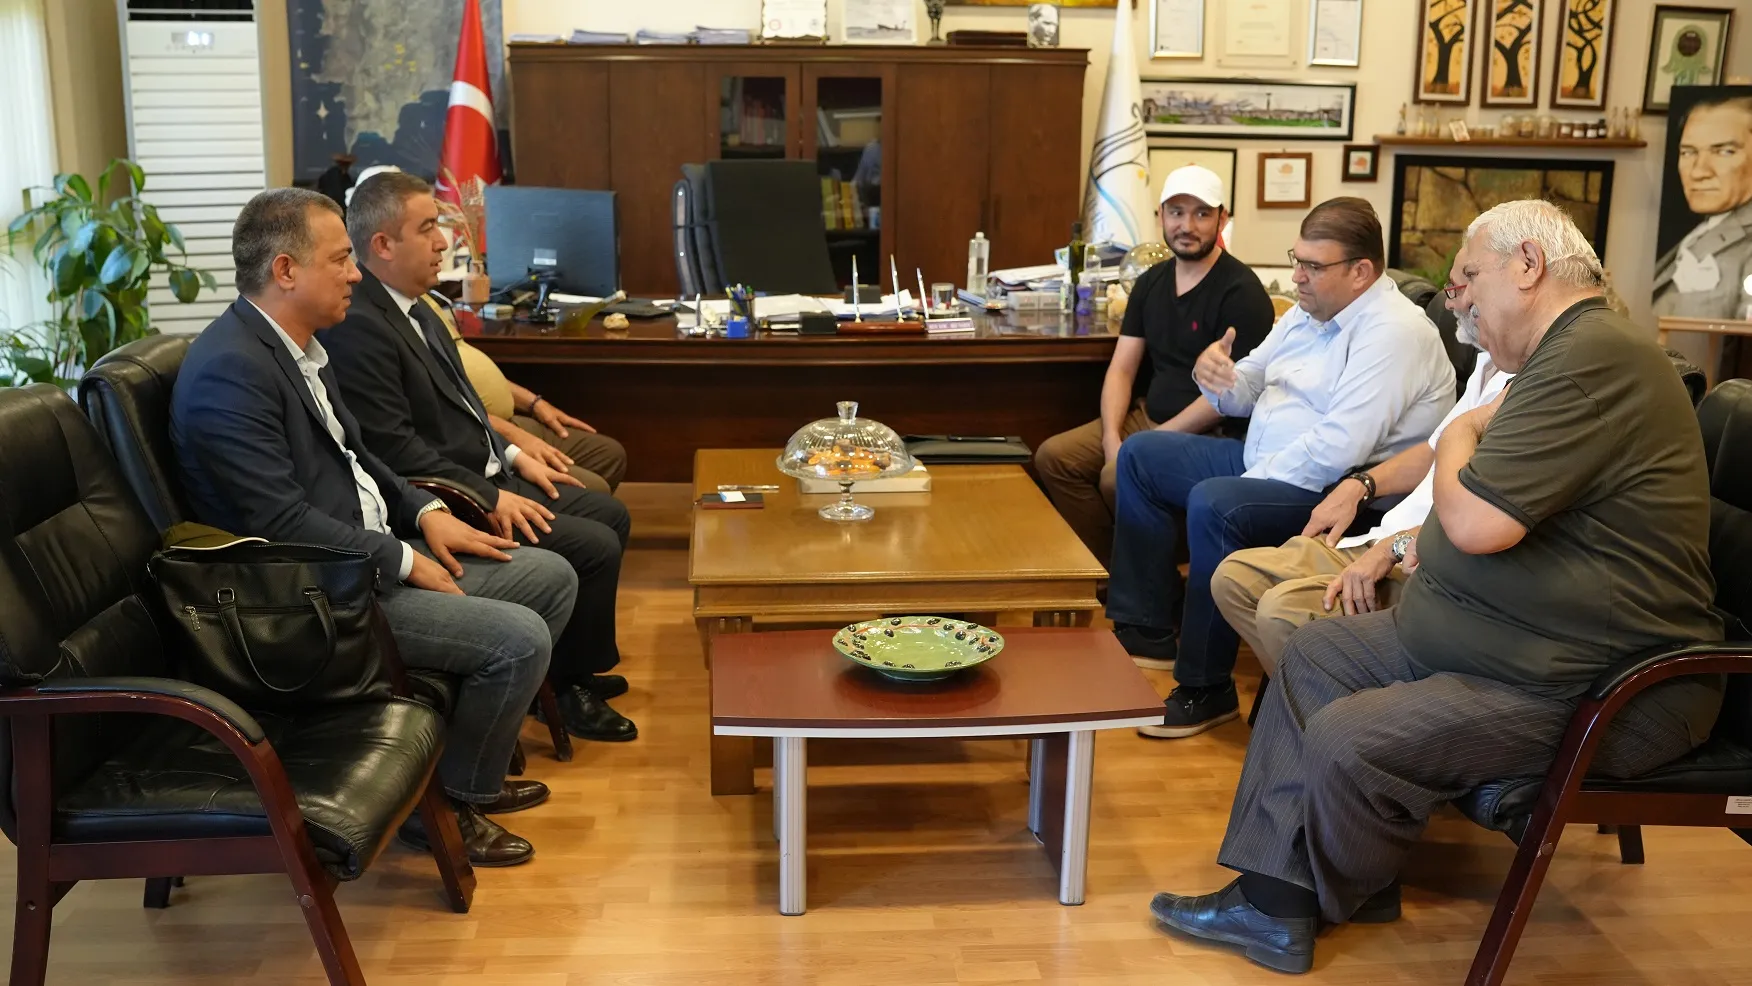 Özbekistan'ın Semerkant Vilayeti'nden Payarık Belediye Başkanı Seferihisar'ı Ziyaret Etti